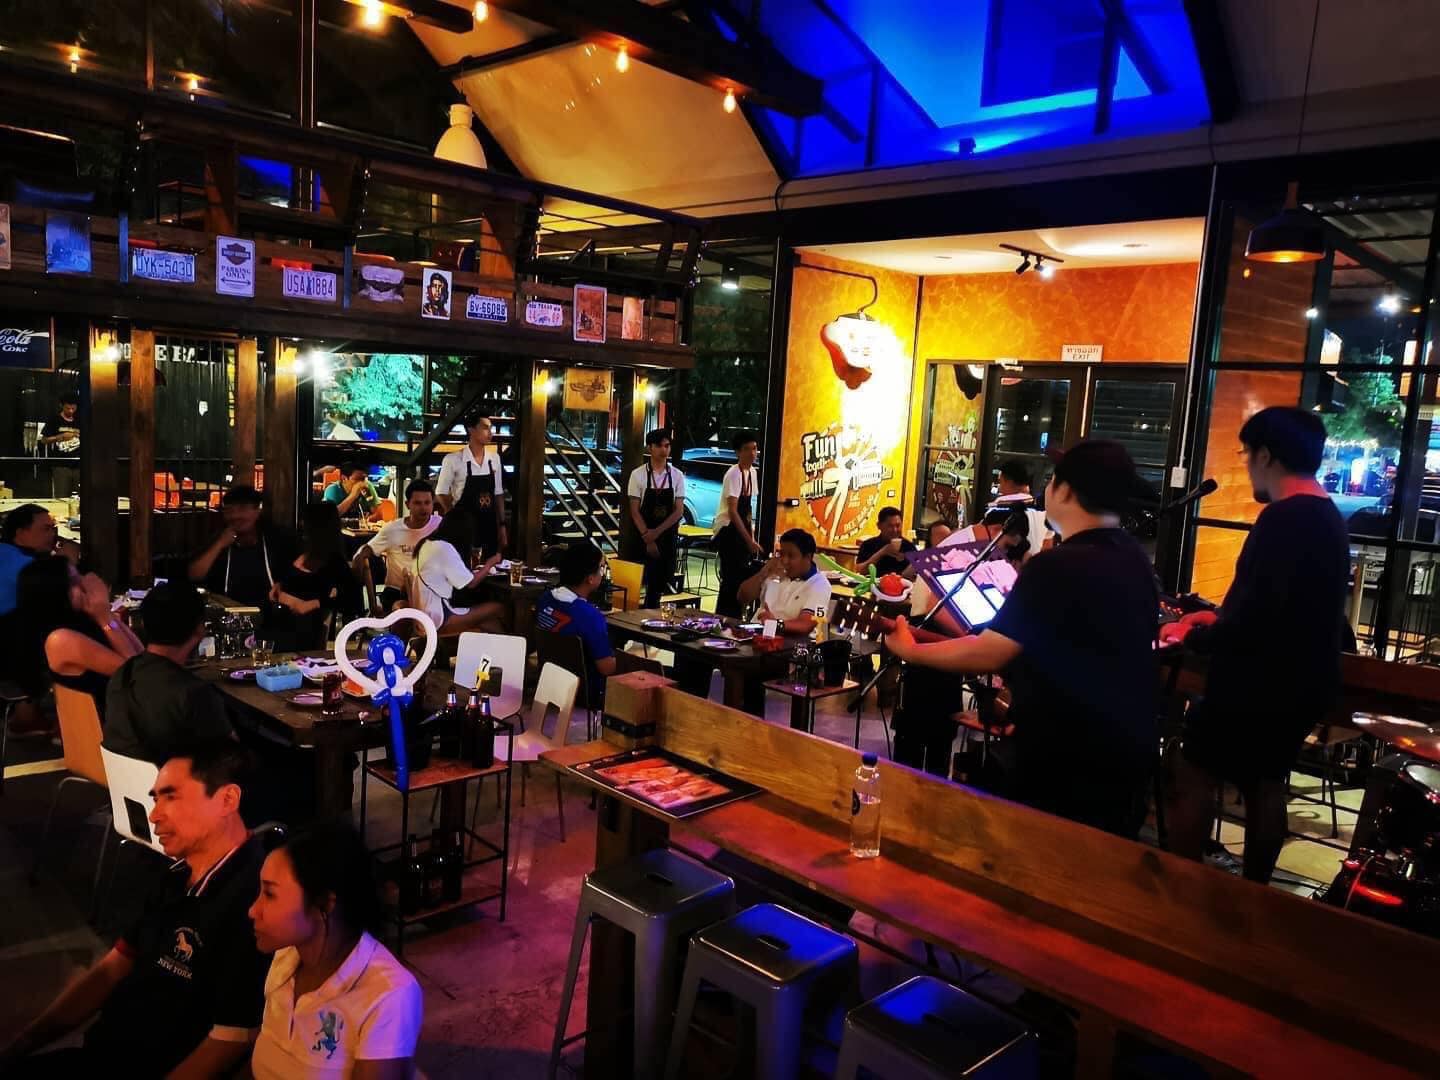 Dee Bar 90 Music & Restaurant (Dee Bar 90 Music & Restaurant) : กรุงเทพมหานคร (Bangkok)